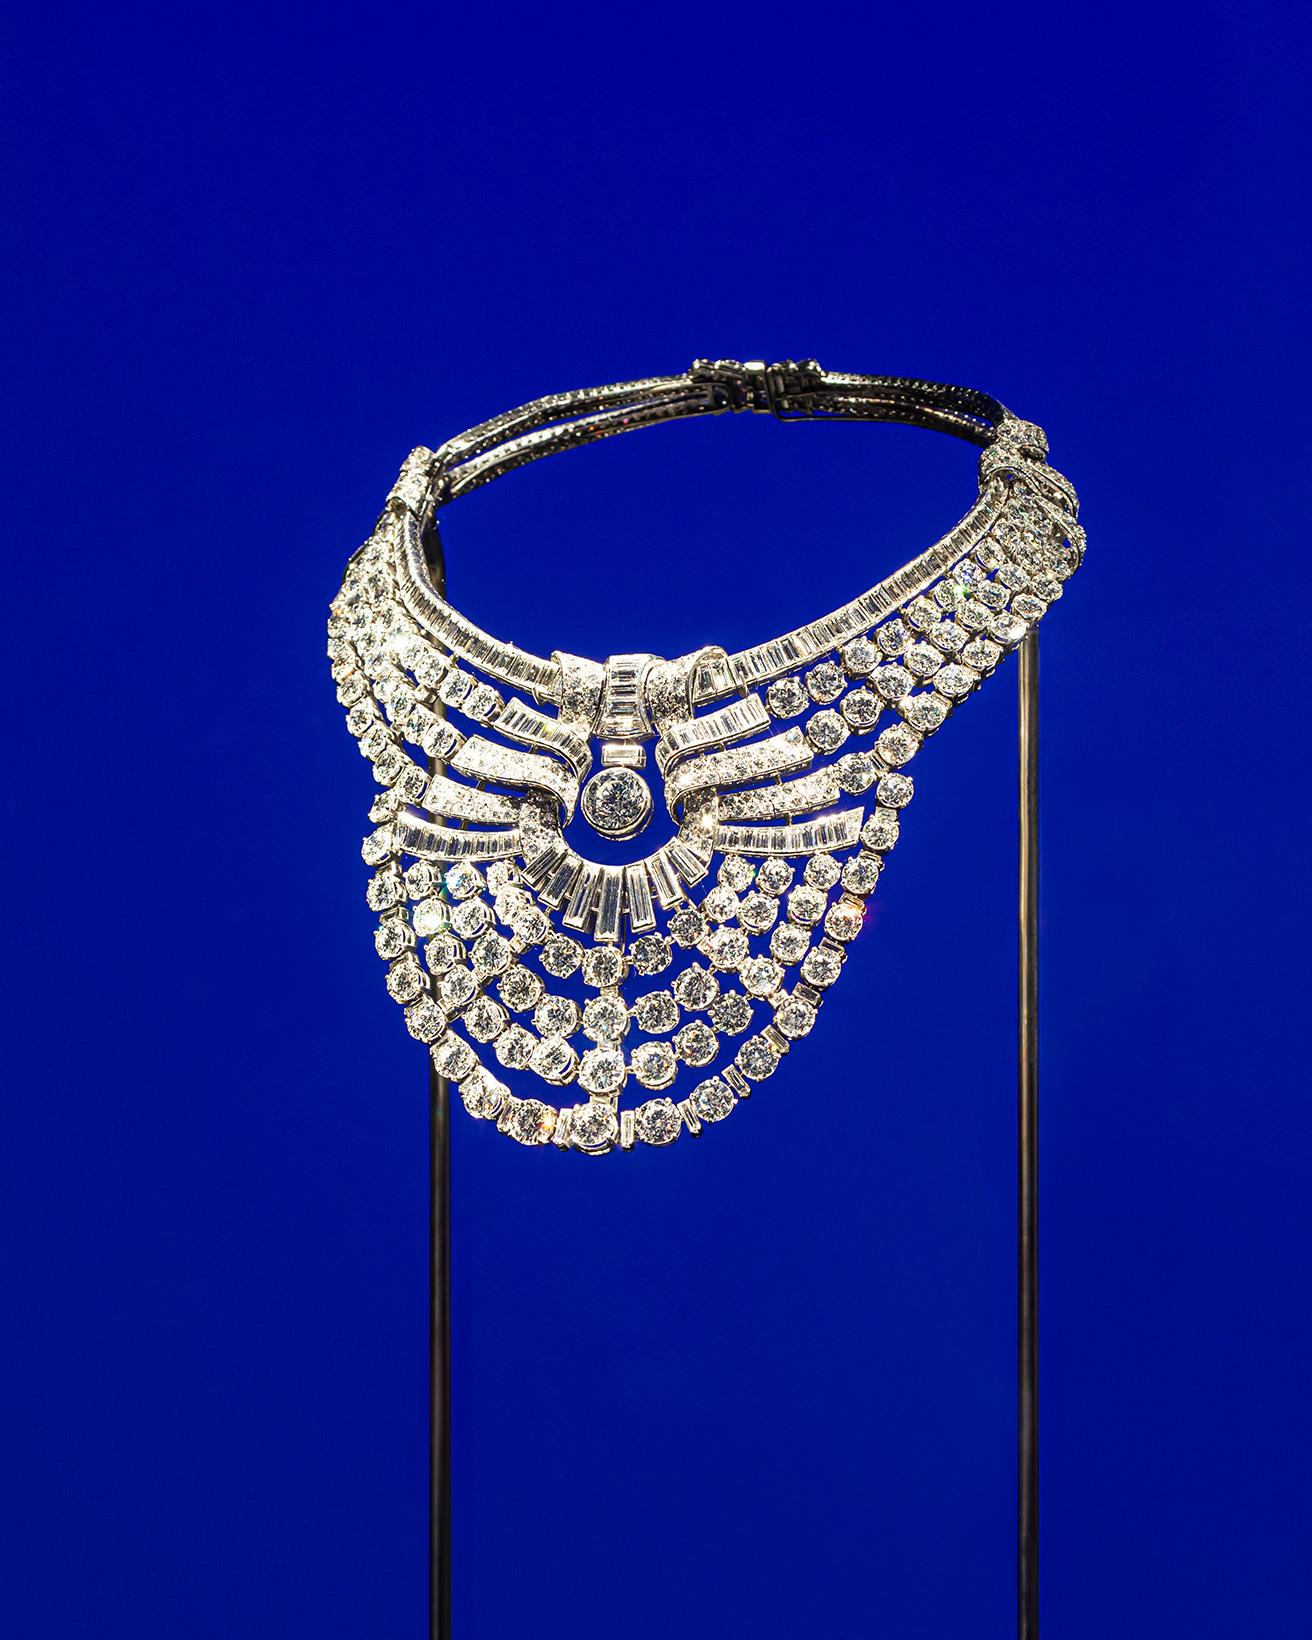 存在感あるネックレスだが、高度な技術であるオープンワークのセッティングで軽やかな印象を与えている。「時」のセクションにある「軽さ」がテーマの部屋。《コラレット ネックレス》（1939年）プラチナ、ダイヤモンド。エジプトのナズリ王妃の旧所蔵品。（ヴァン クリーフ＆アーペル コレクション）